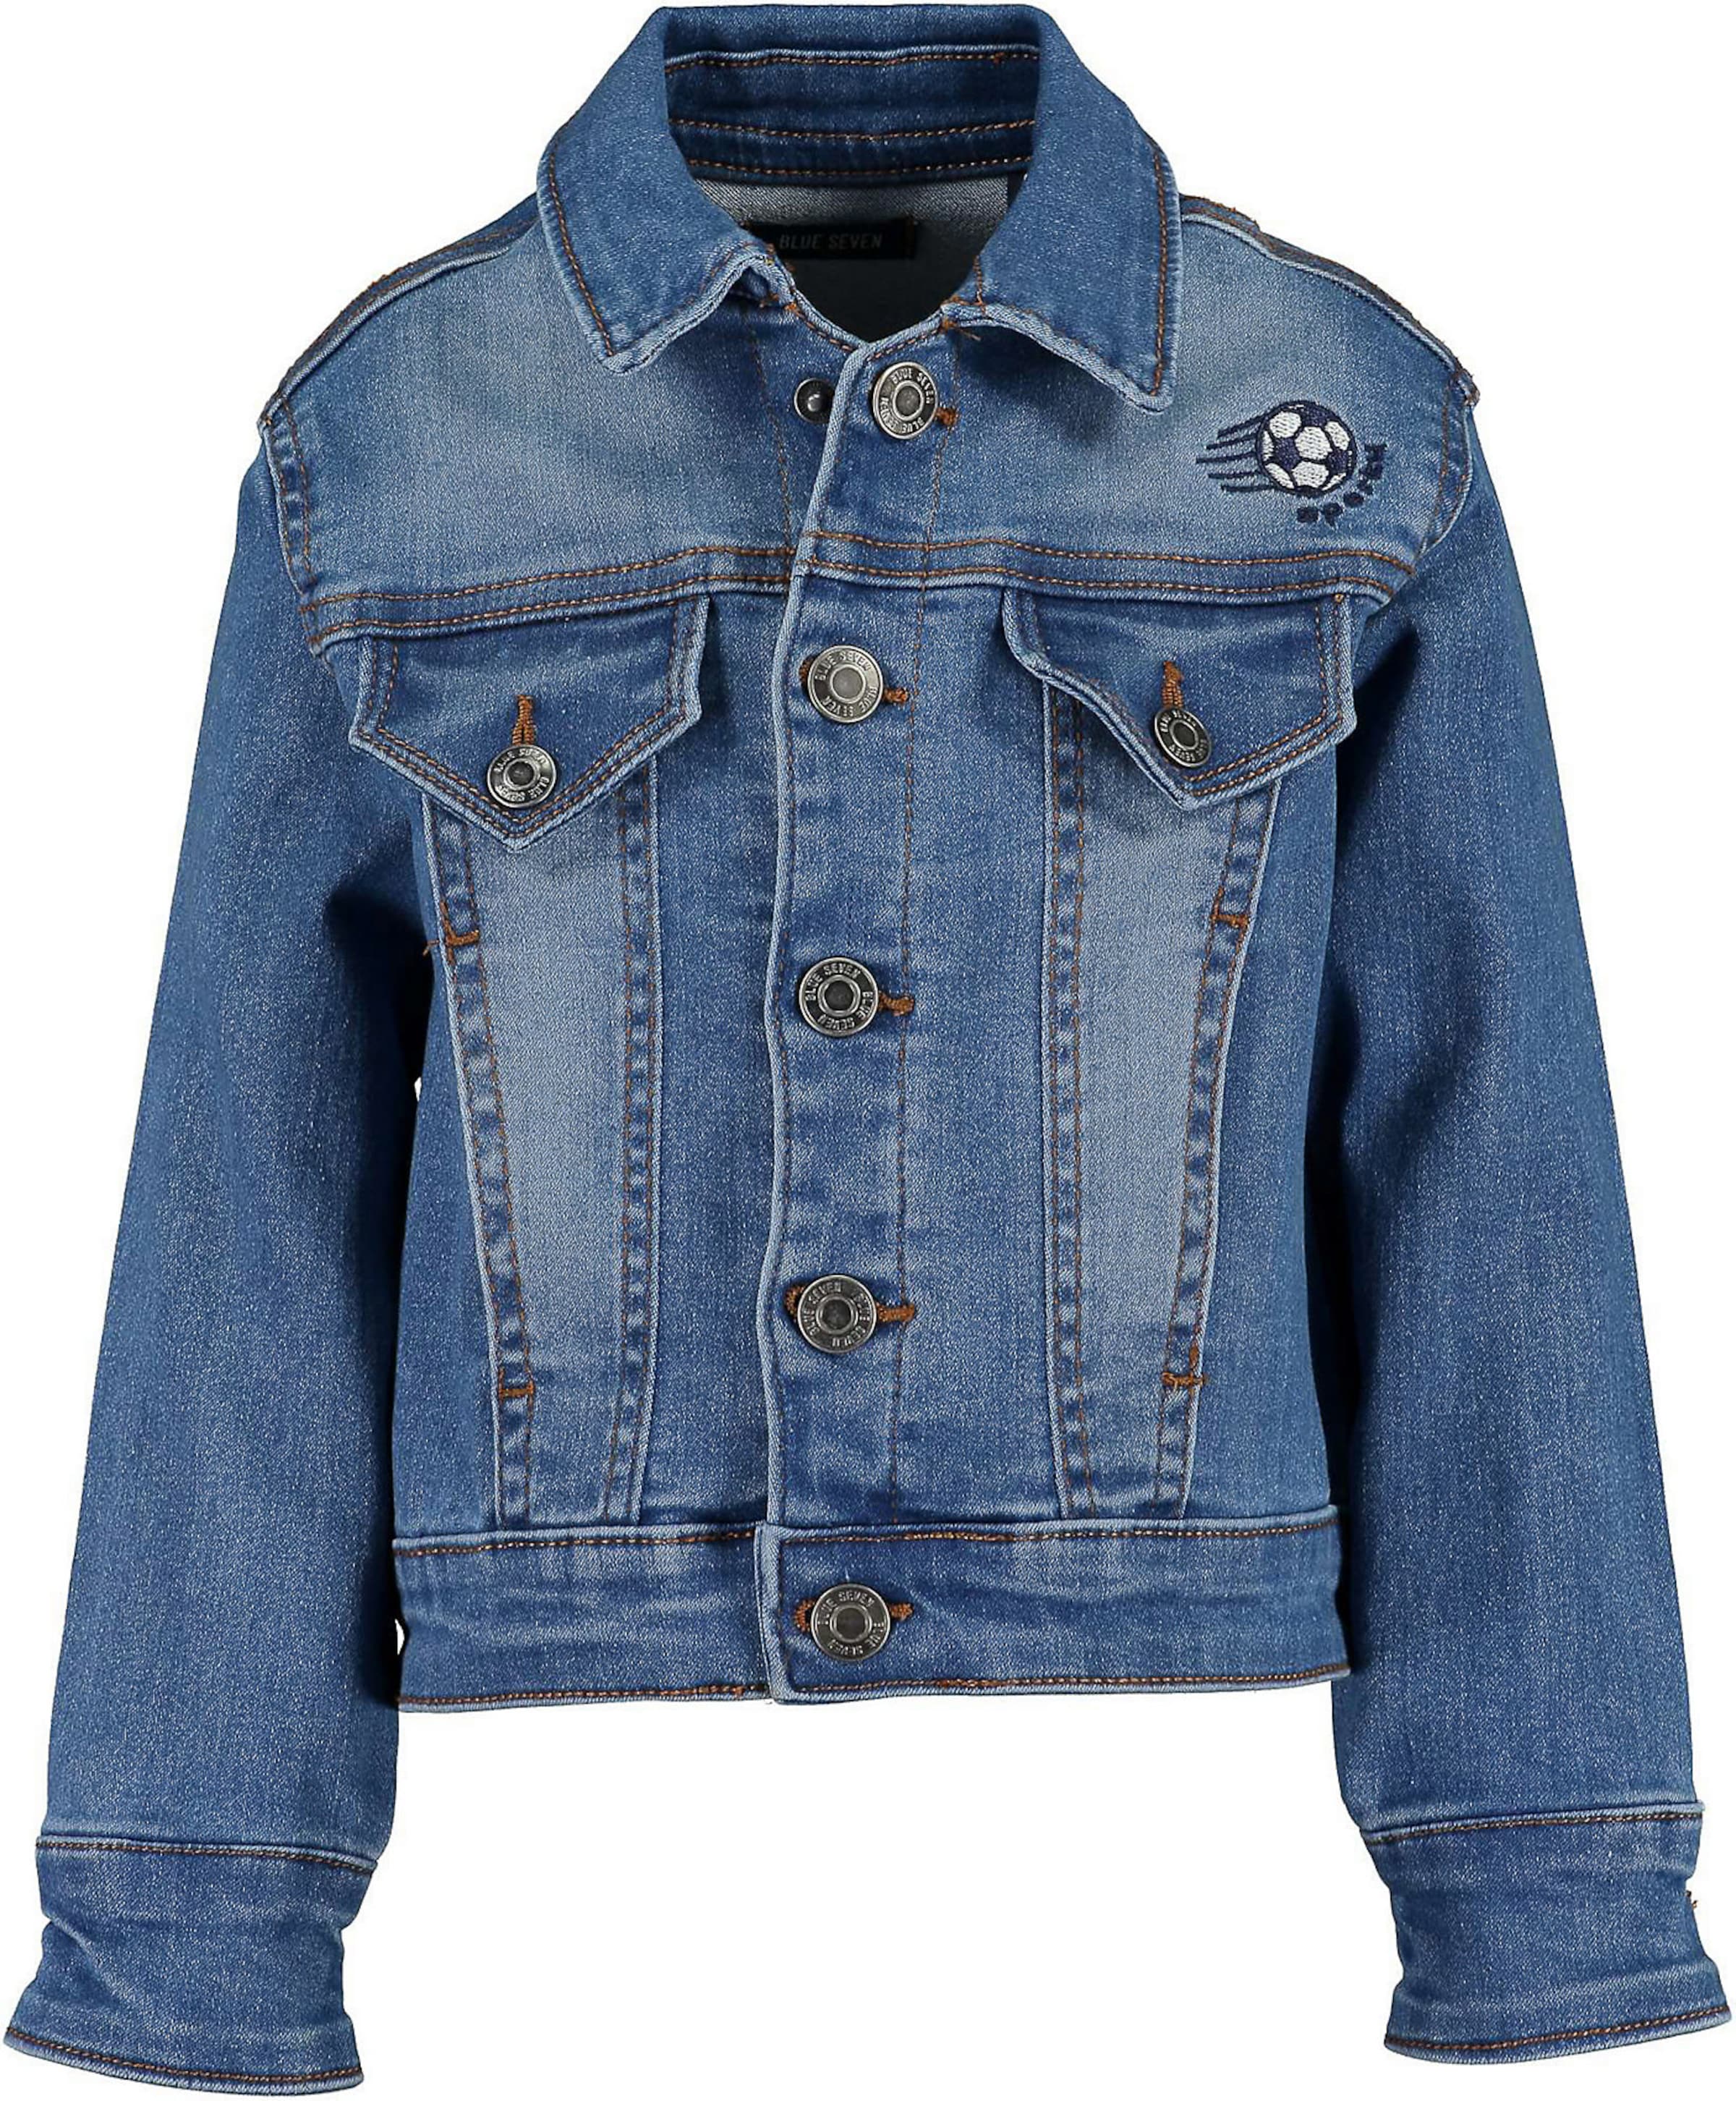 KINDER Jacken Jean In Extenso In Extenso Jeansjacke Rabatt 96 % Blau 74 